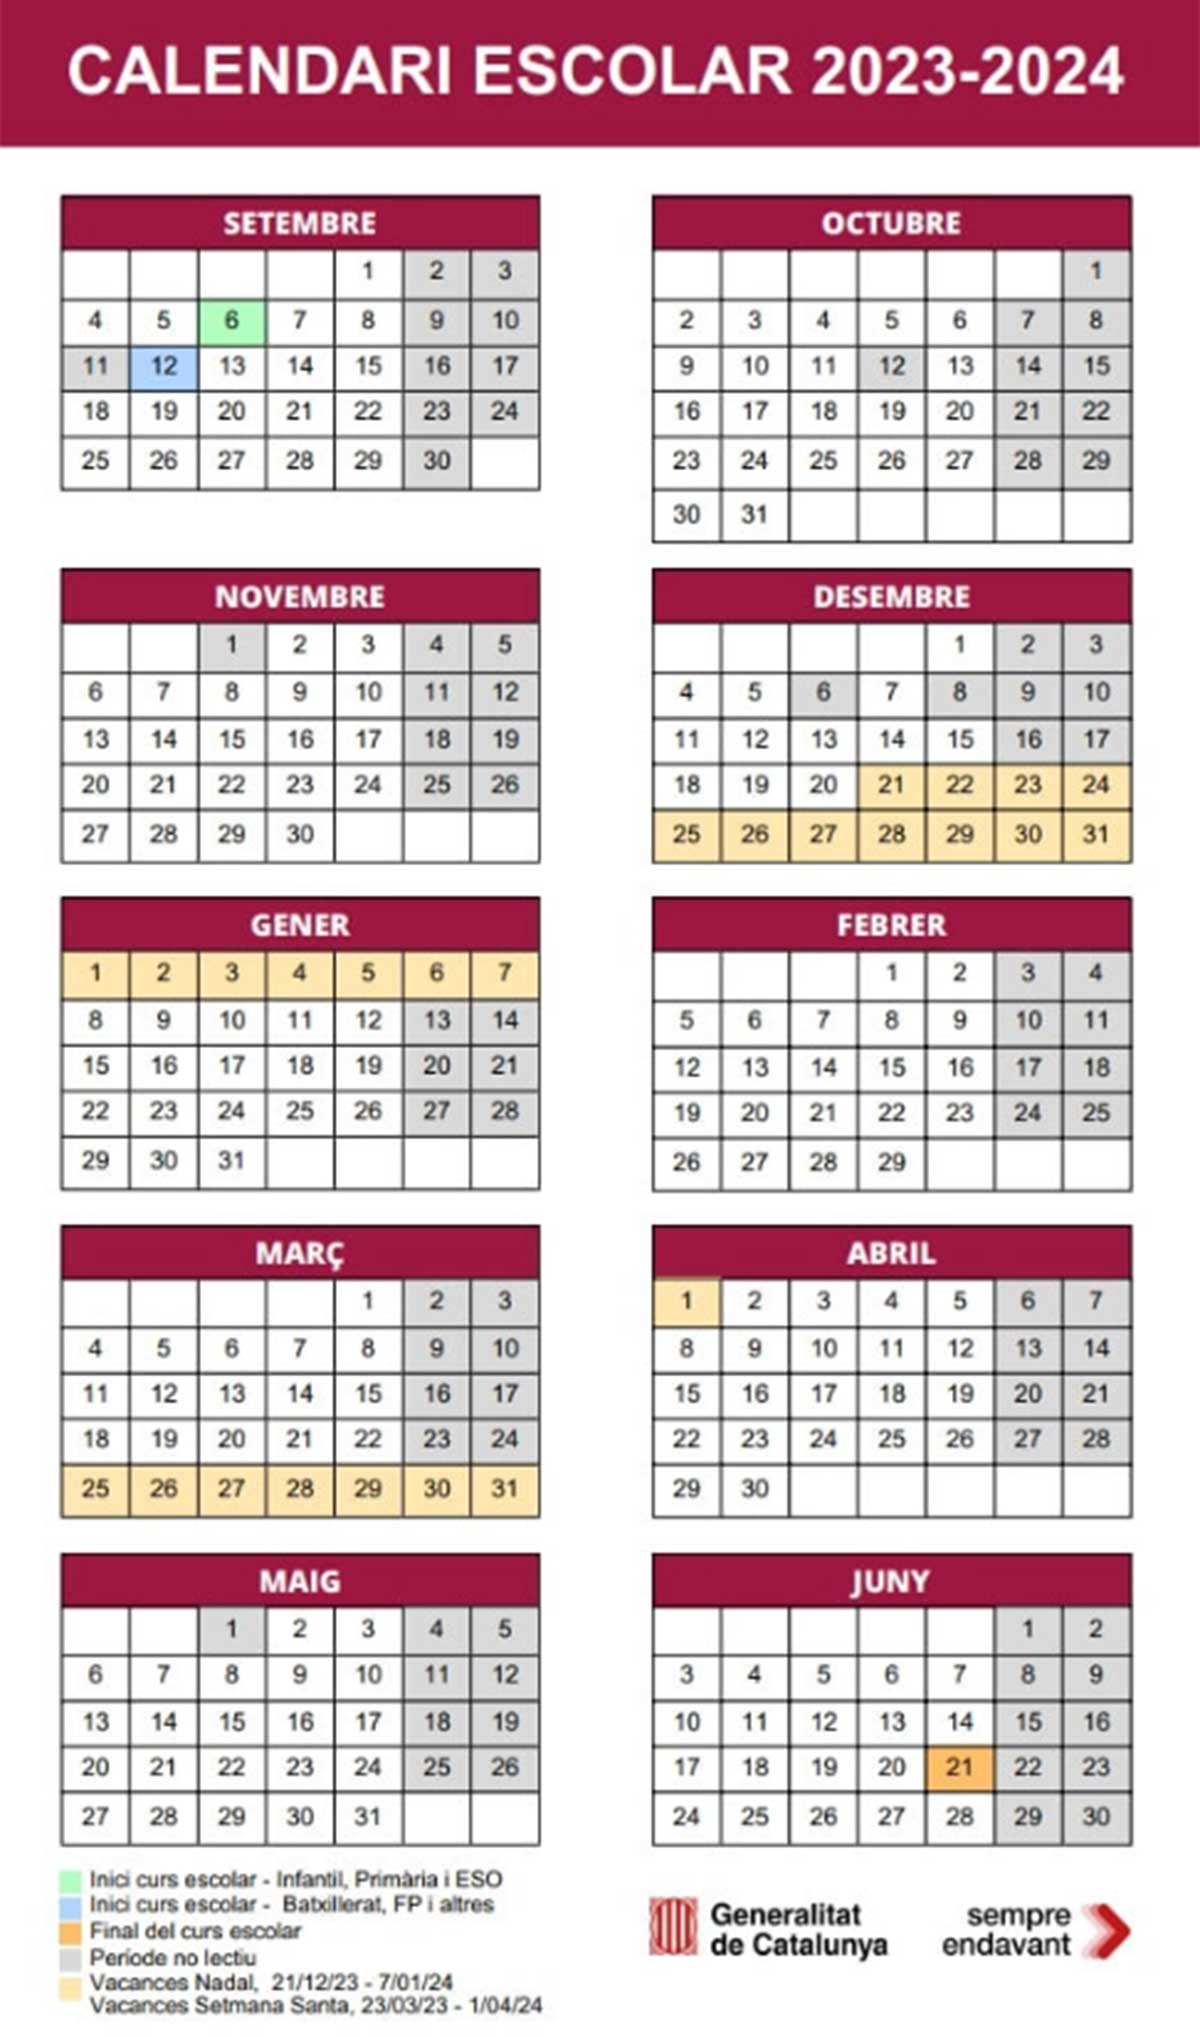 Calendario escolar 2023-2024 en Cataluña.